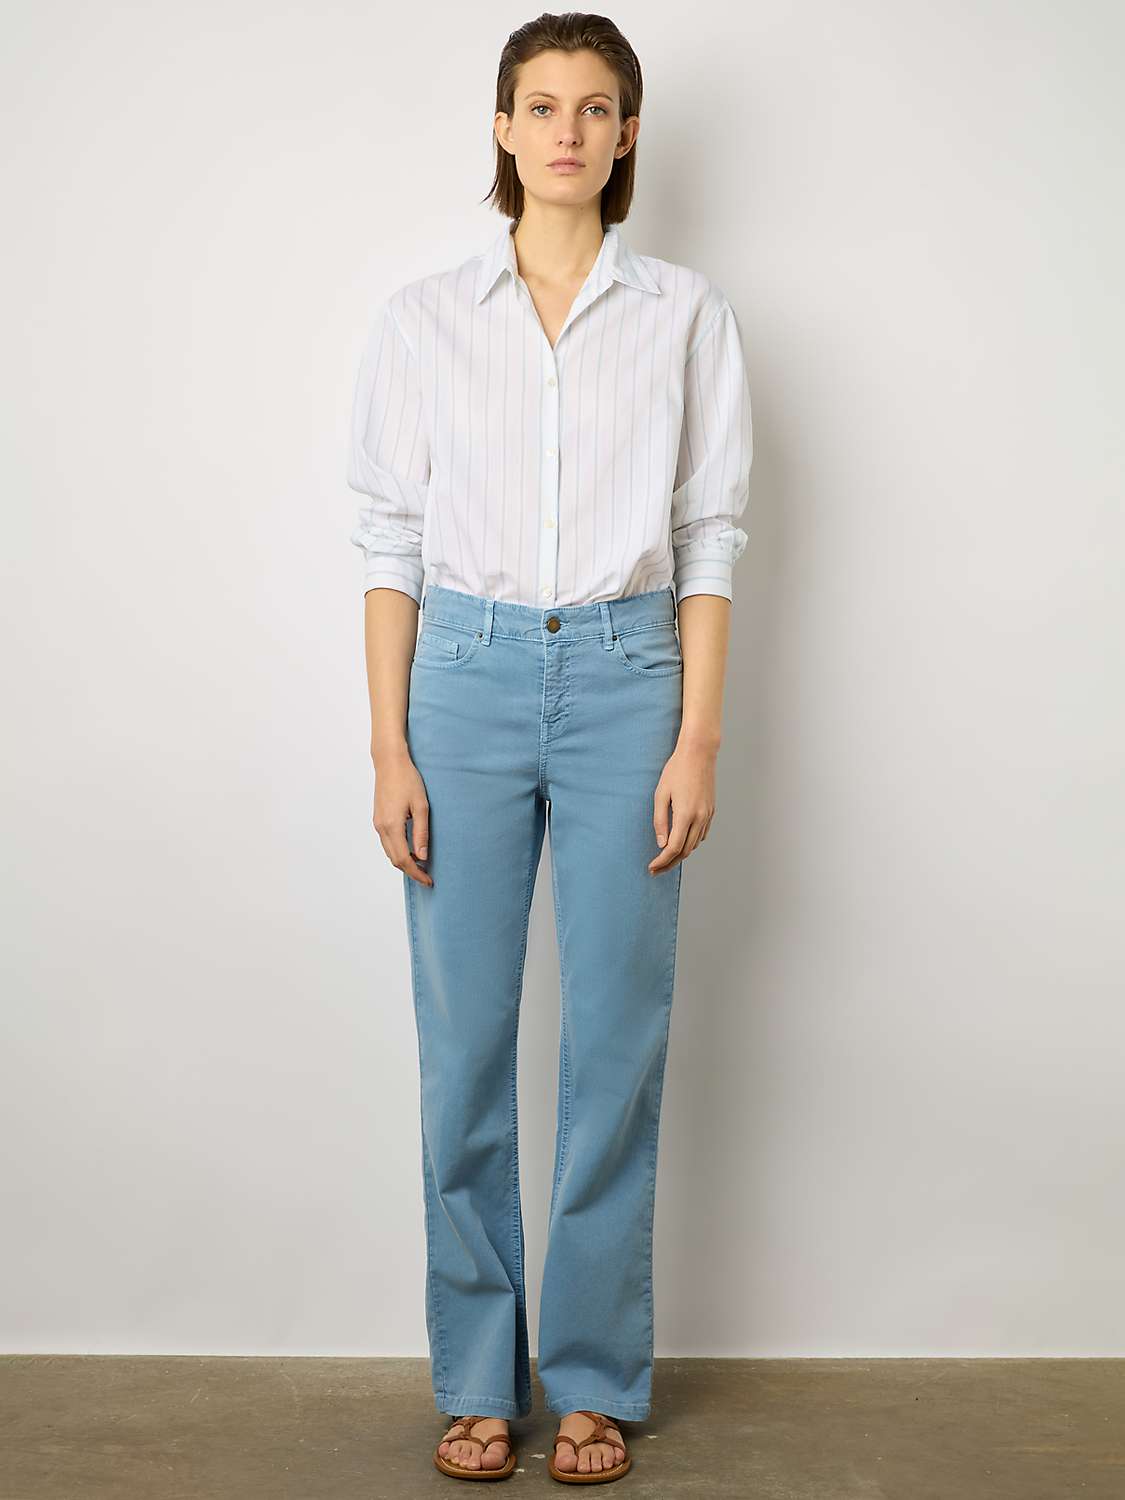 Buy Gerard Darel Carell Cotton Blend Jeans, Blue Online at johnlewis.com